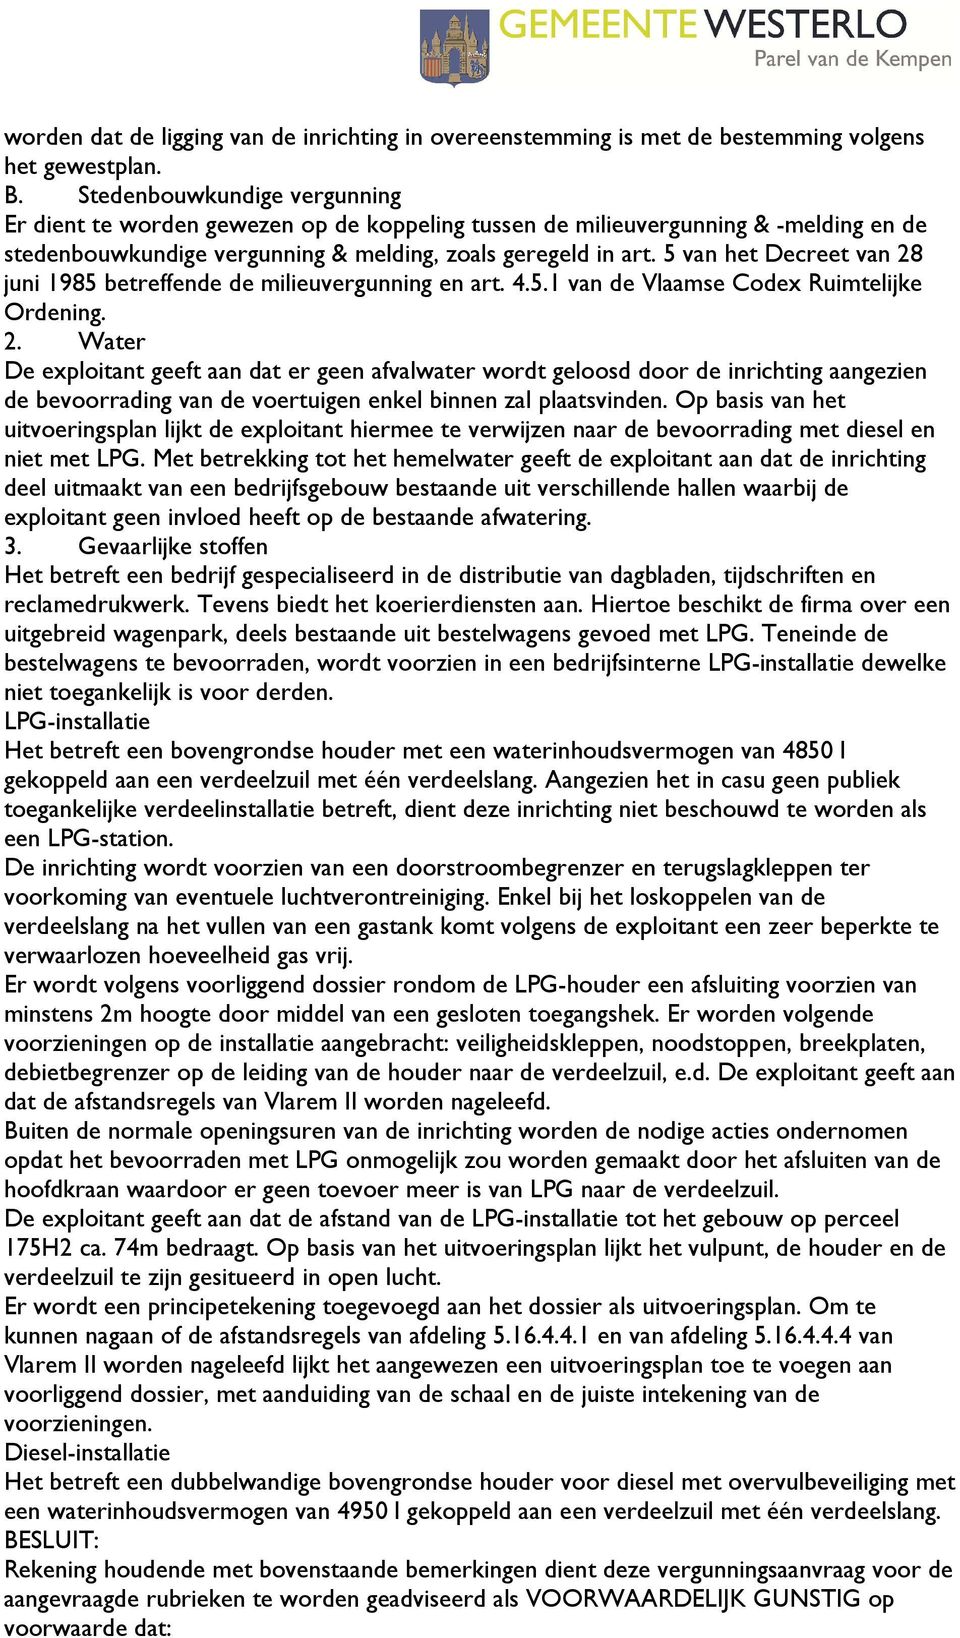 5 van het Decreet van 28 juni 1985 betreffende de milieuvergunning en art. 4.5.1 van de Vlaamse Codex Ruimtelijke Ordening. 2. Water De exploitant geeft aan dat er geen afvalwater wordt geloosd door de inrichting aangezien de bevoorrading van de voertuigen enkel binnen zal plaatsvinden.